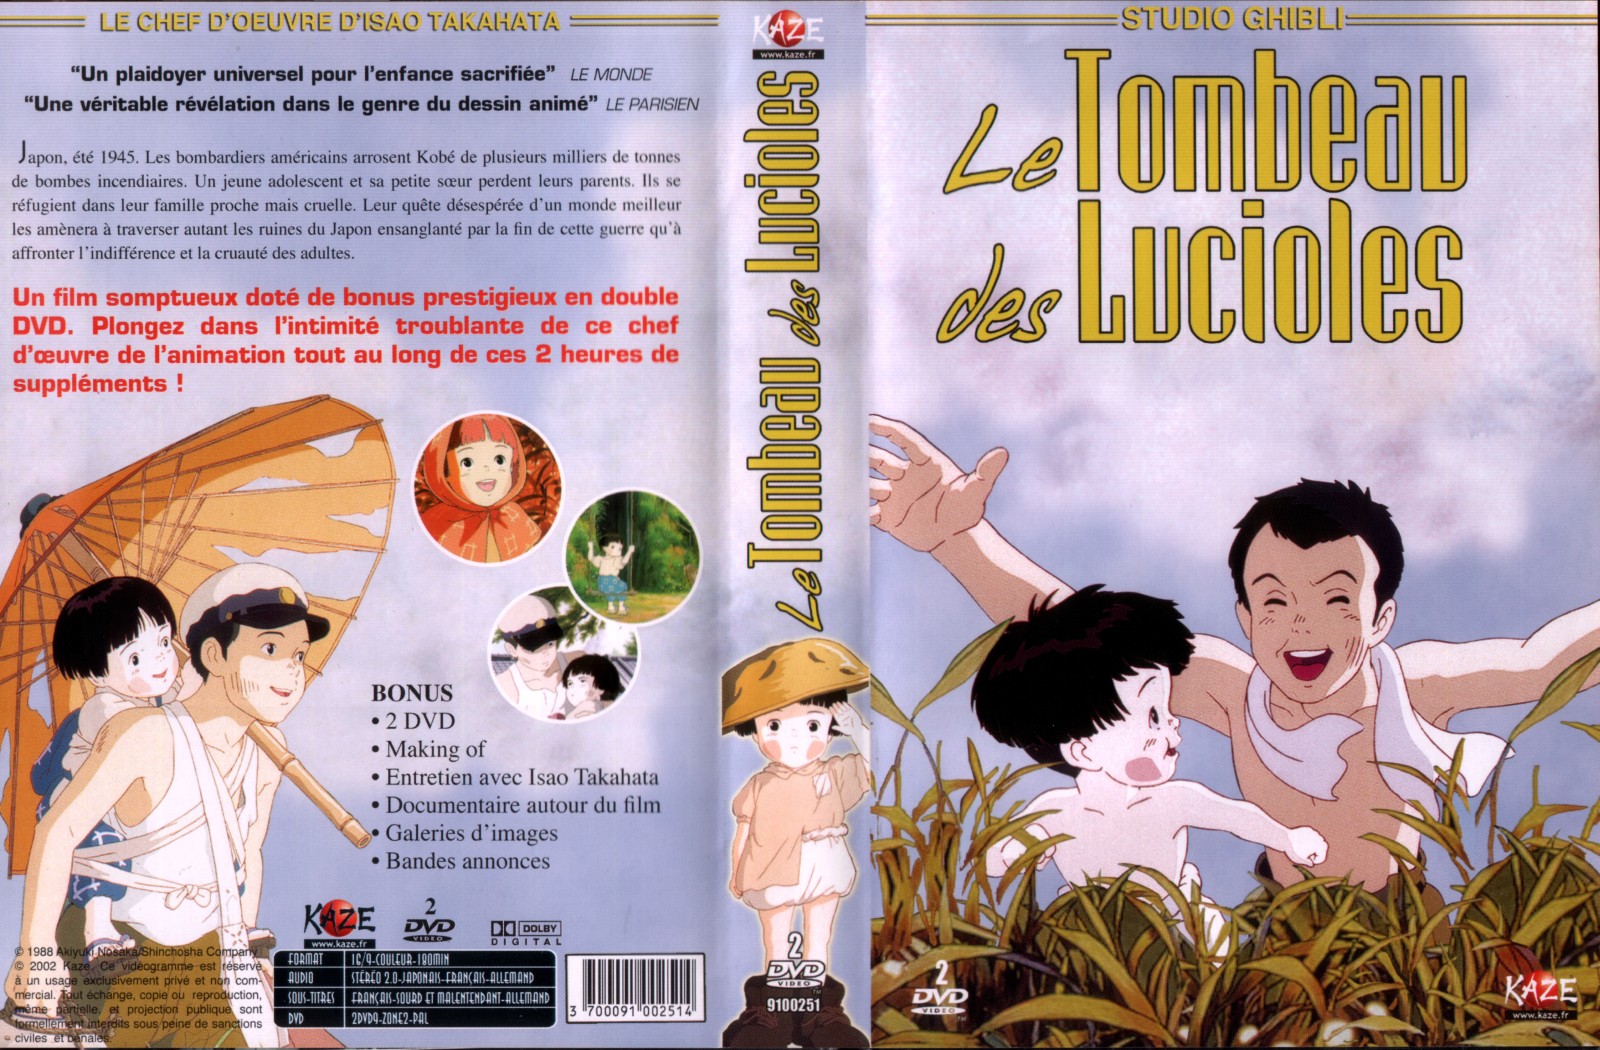 Jaquette DVD Le tombeau des lucioles v2